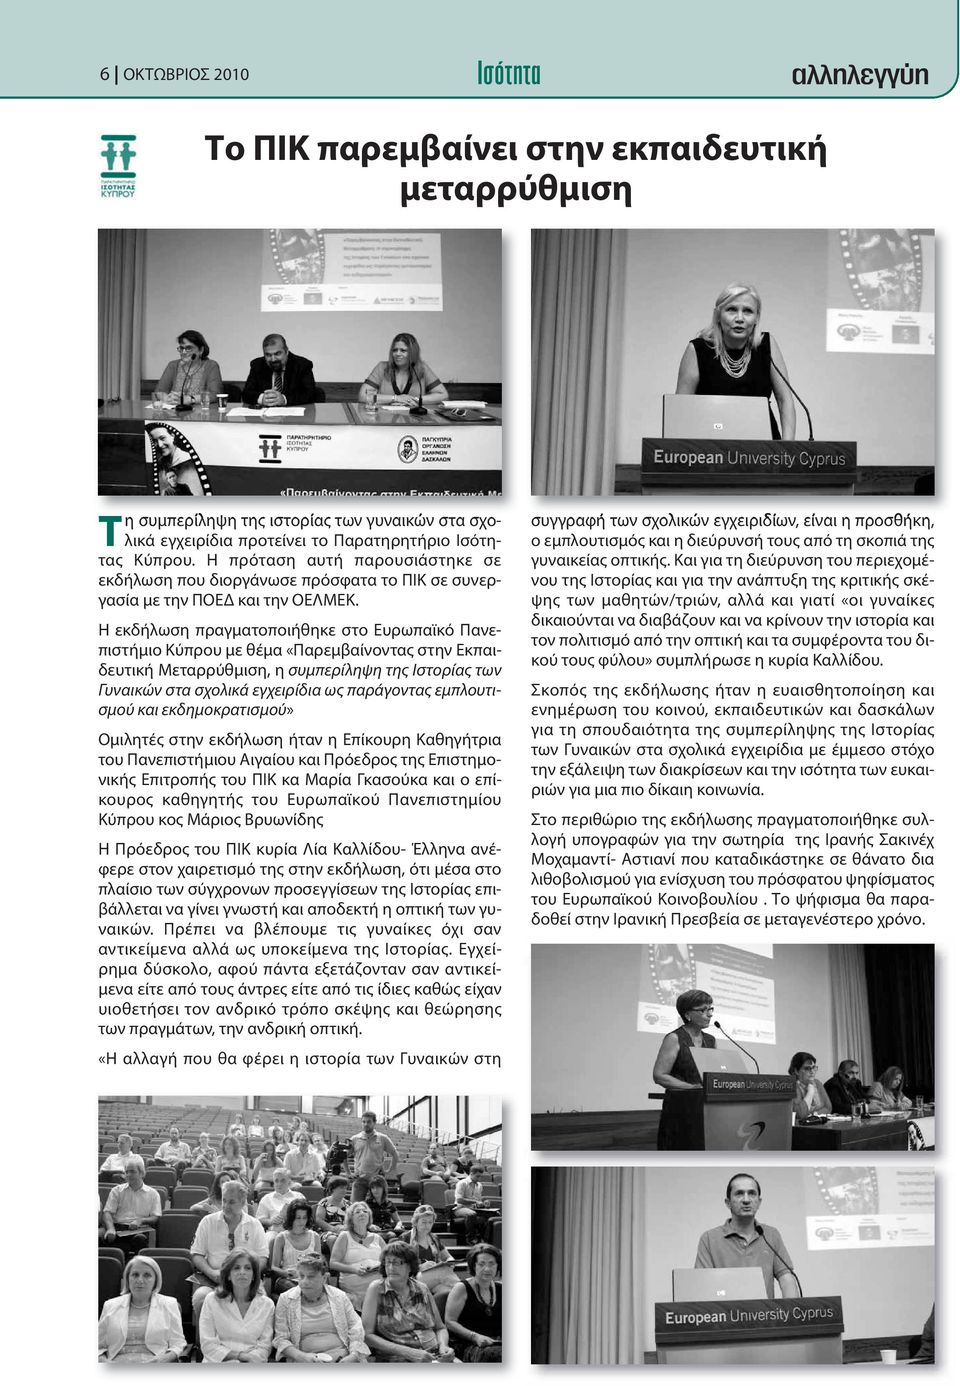 Η εκδήλωση πραγματοποιήθηκε στο Ευρωπαϊκό Πανεπιστήμιο Κύπρου με θέμα «Παρεμβαίνοντας στην Εκπαιδευτική Μεταρρύθμιση, η συμπερίληψη της Ιστορίας των Γυναικών στα σχολικά εγχειρίδια ως παράγοντας